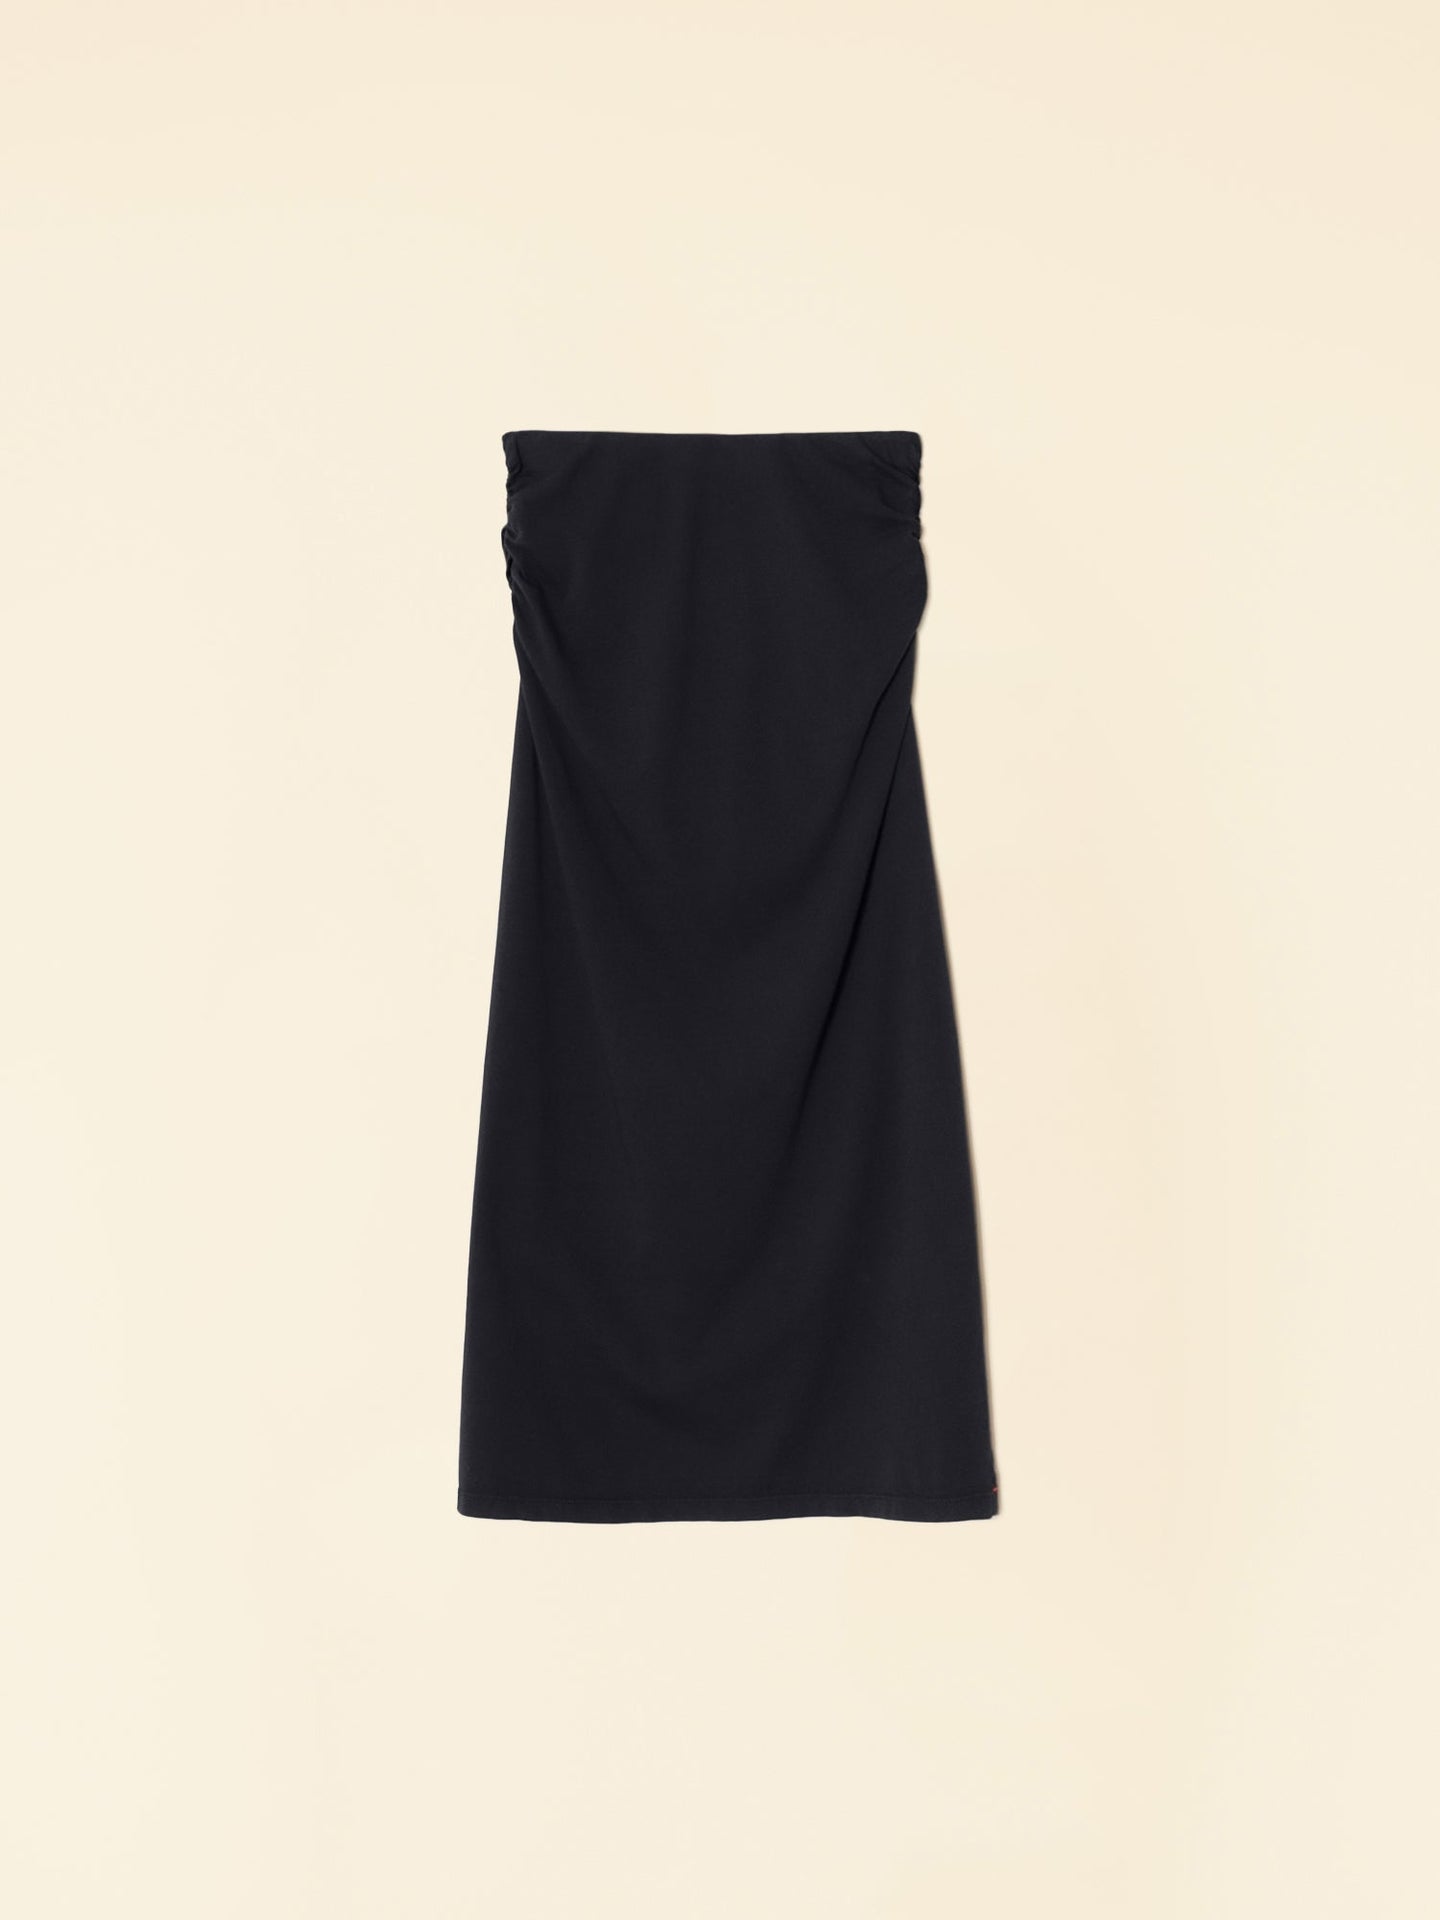 Xirena Skirt Black Lenny Skirt